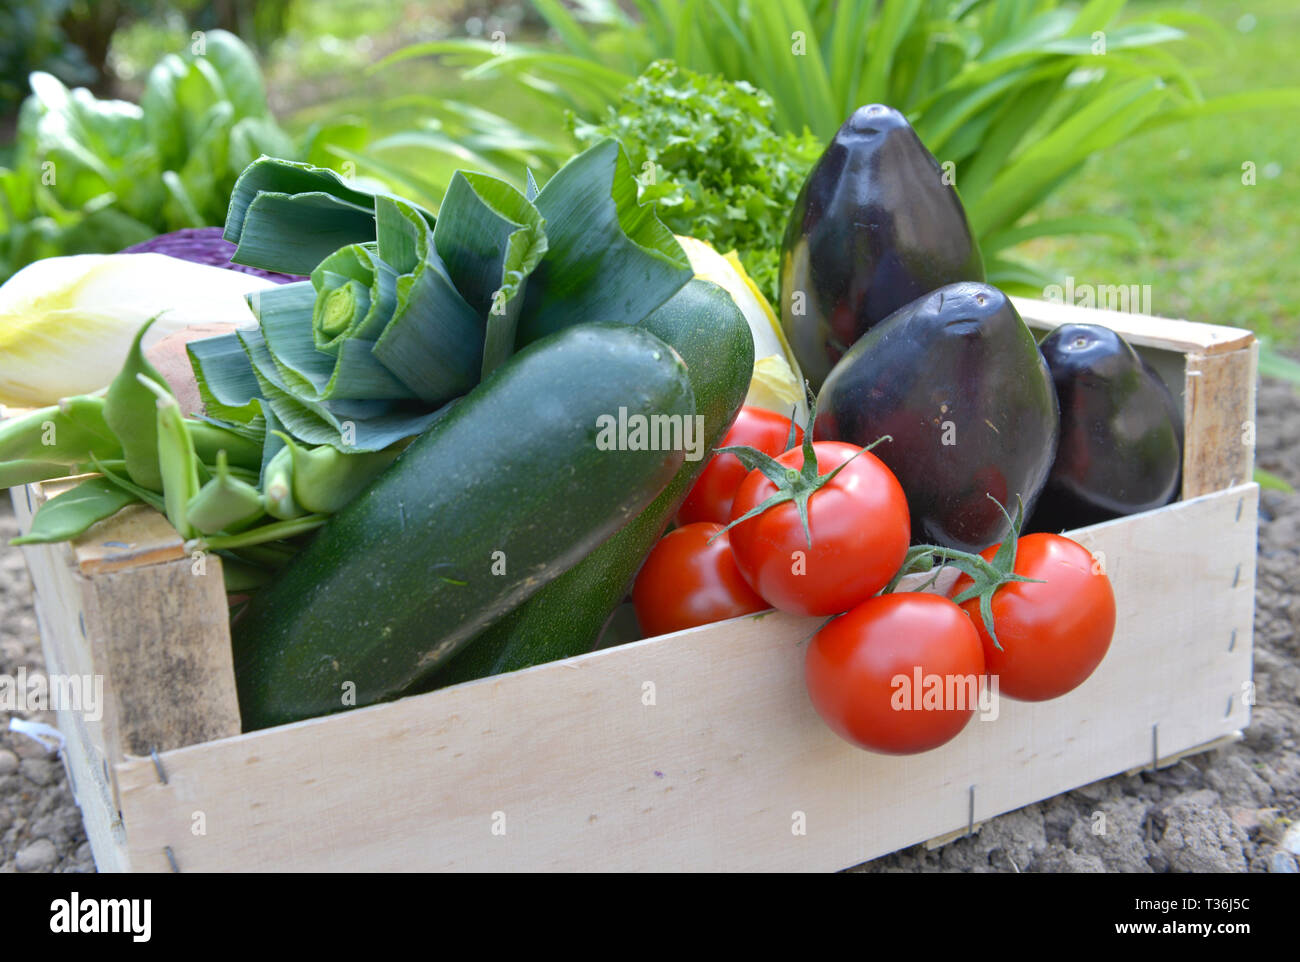 Chiudere su carni e verdure colorate in una cassa messo a terra in un giardino Foto Stock